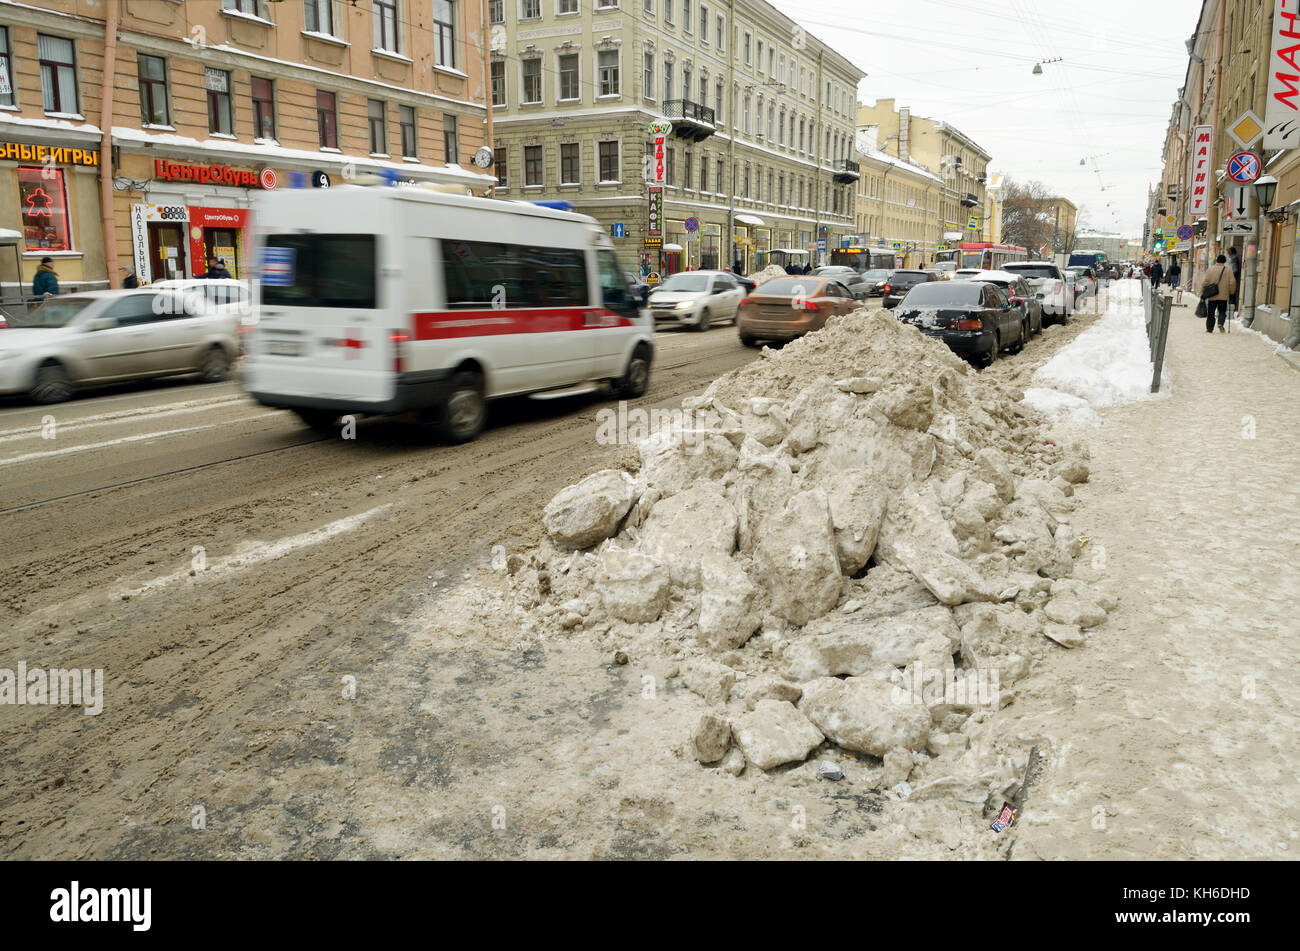 12.11.2016. Russland. saint-petersburg. In der Stadt, im November, fiel der Schnee mehr als im Winter. Stockfoto